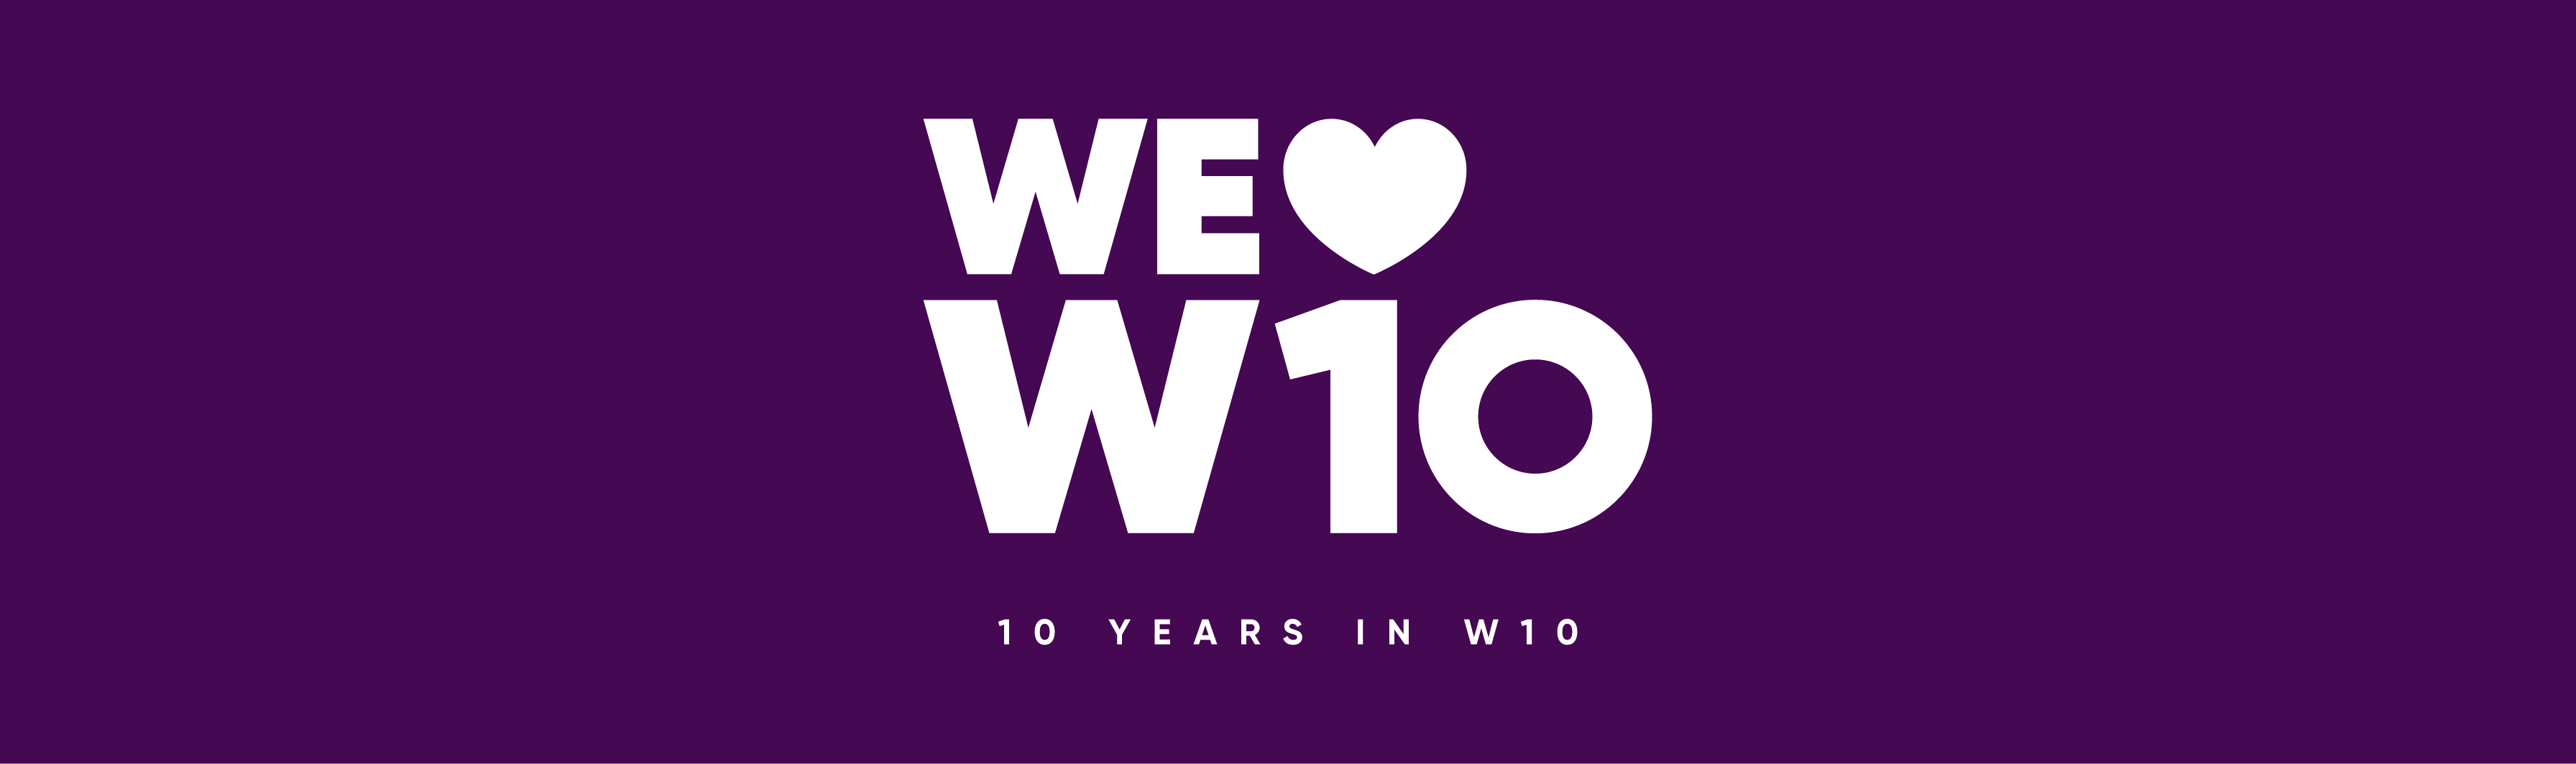 We heart W10